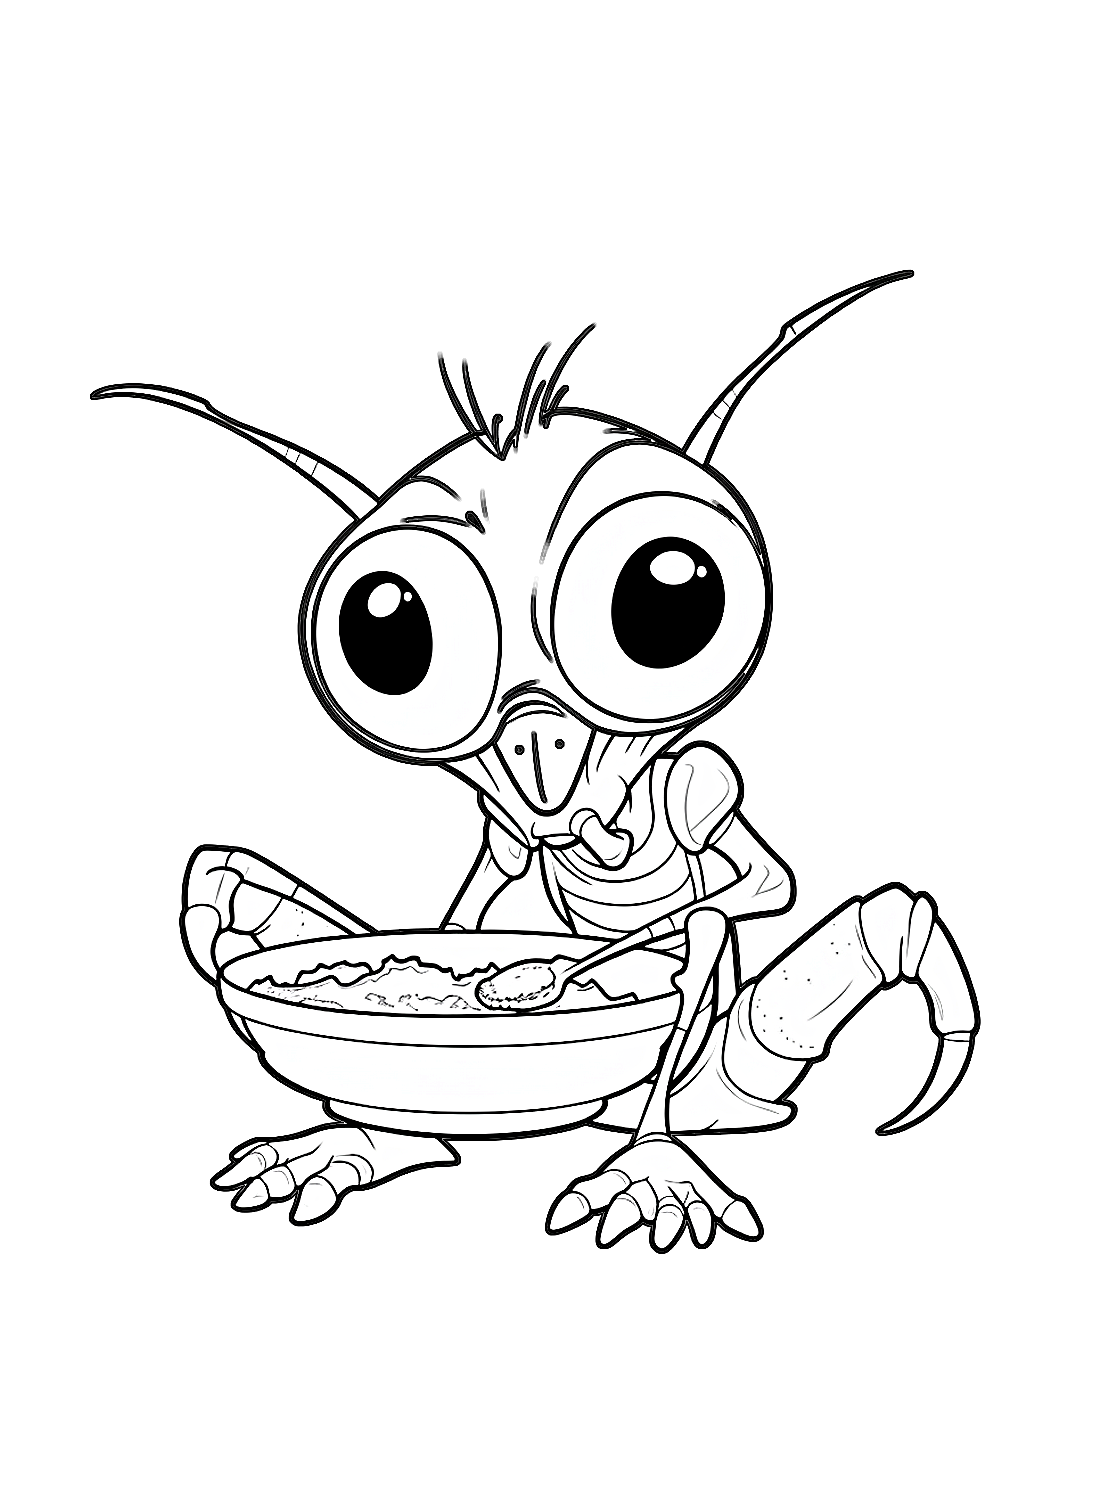 Una Cucaracha se come la sopa de Cucaracha